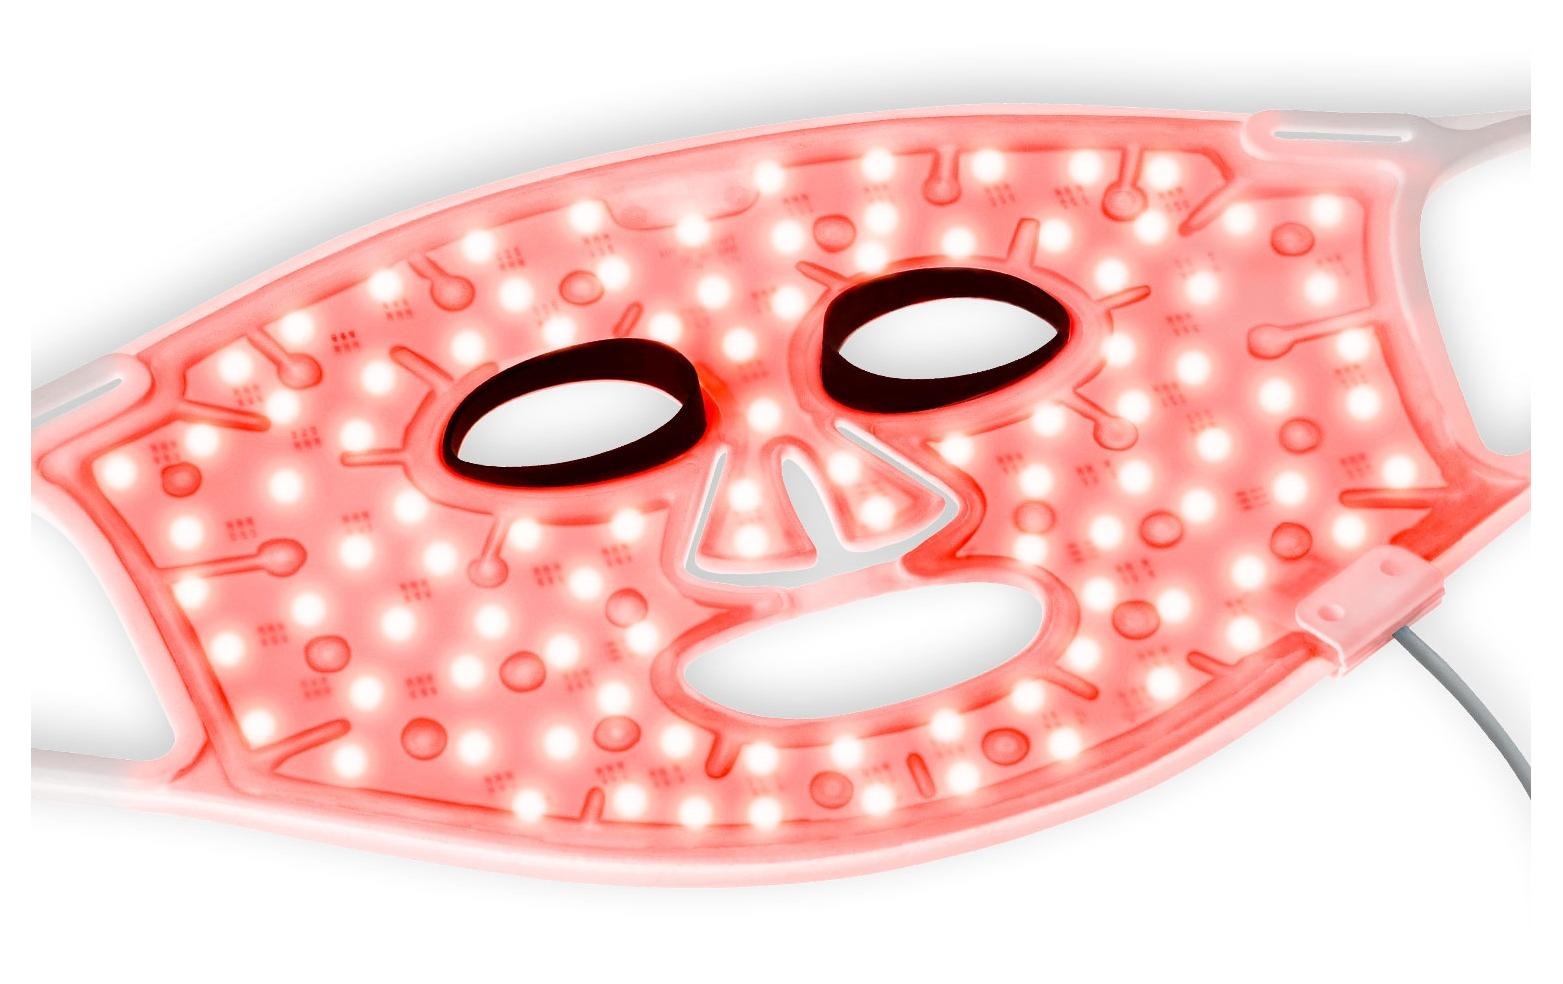 Silk'n Elektrische Gesichtsreinigungsbürste »LED Face Mask 100«